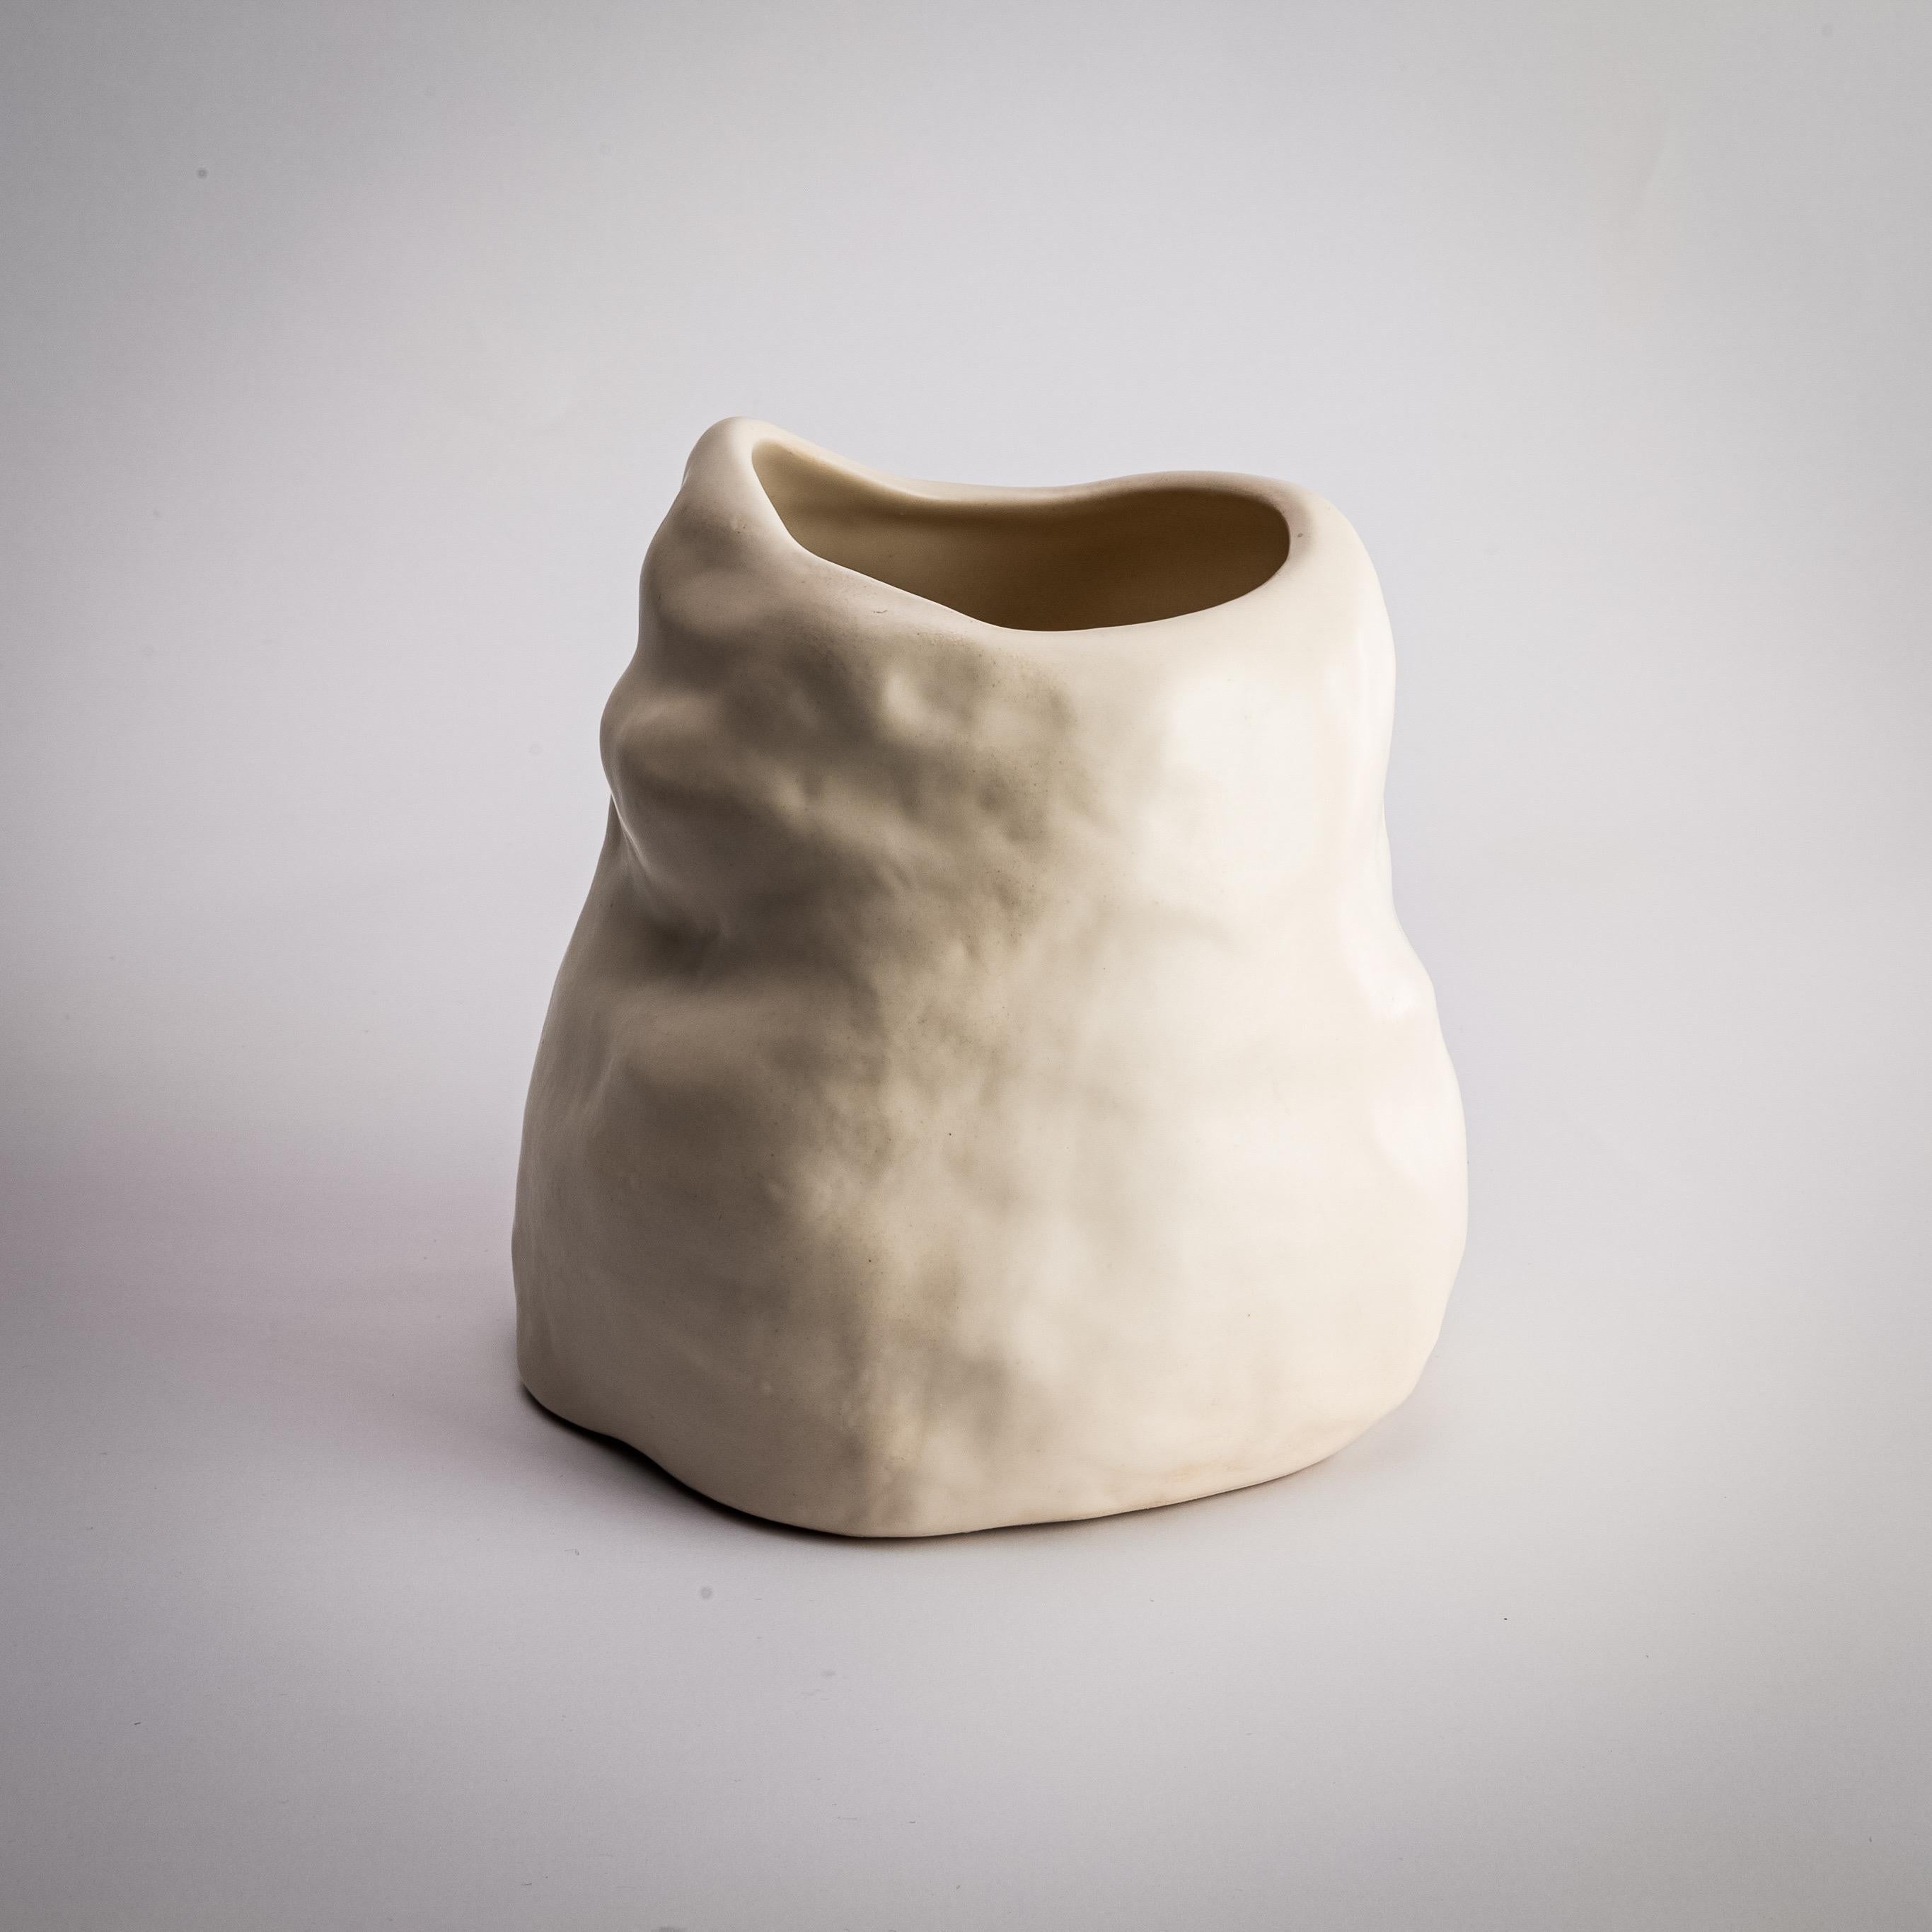 Argentine Handmade Ceramic Flower Vase Organic Shape Matte Satin Finish For Sale